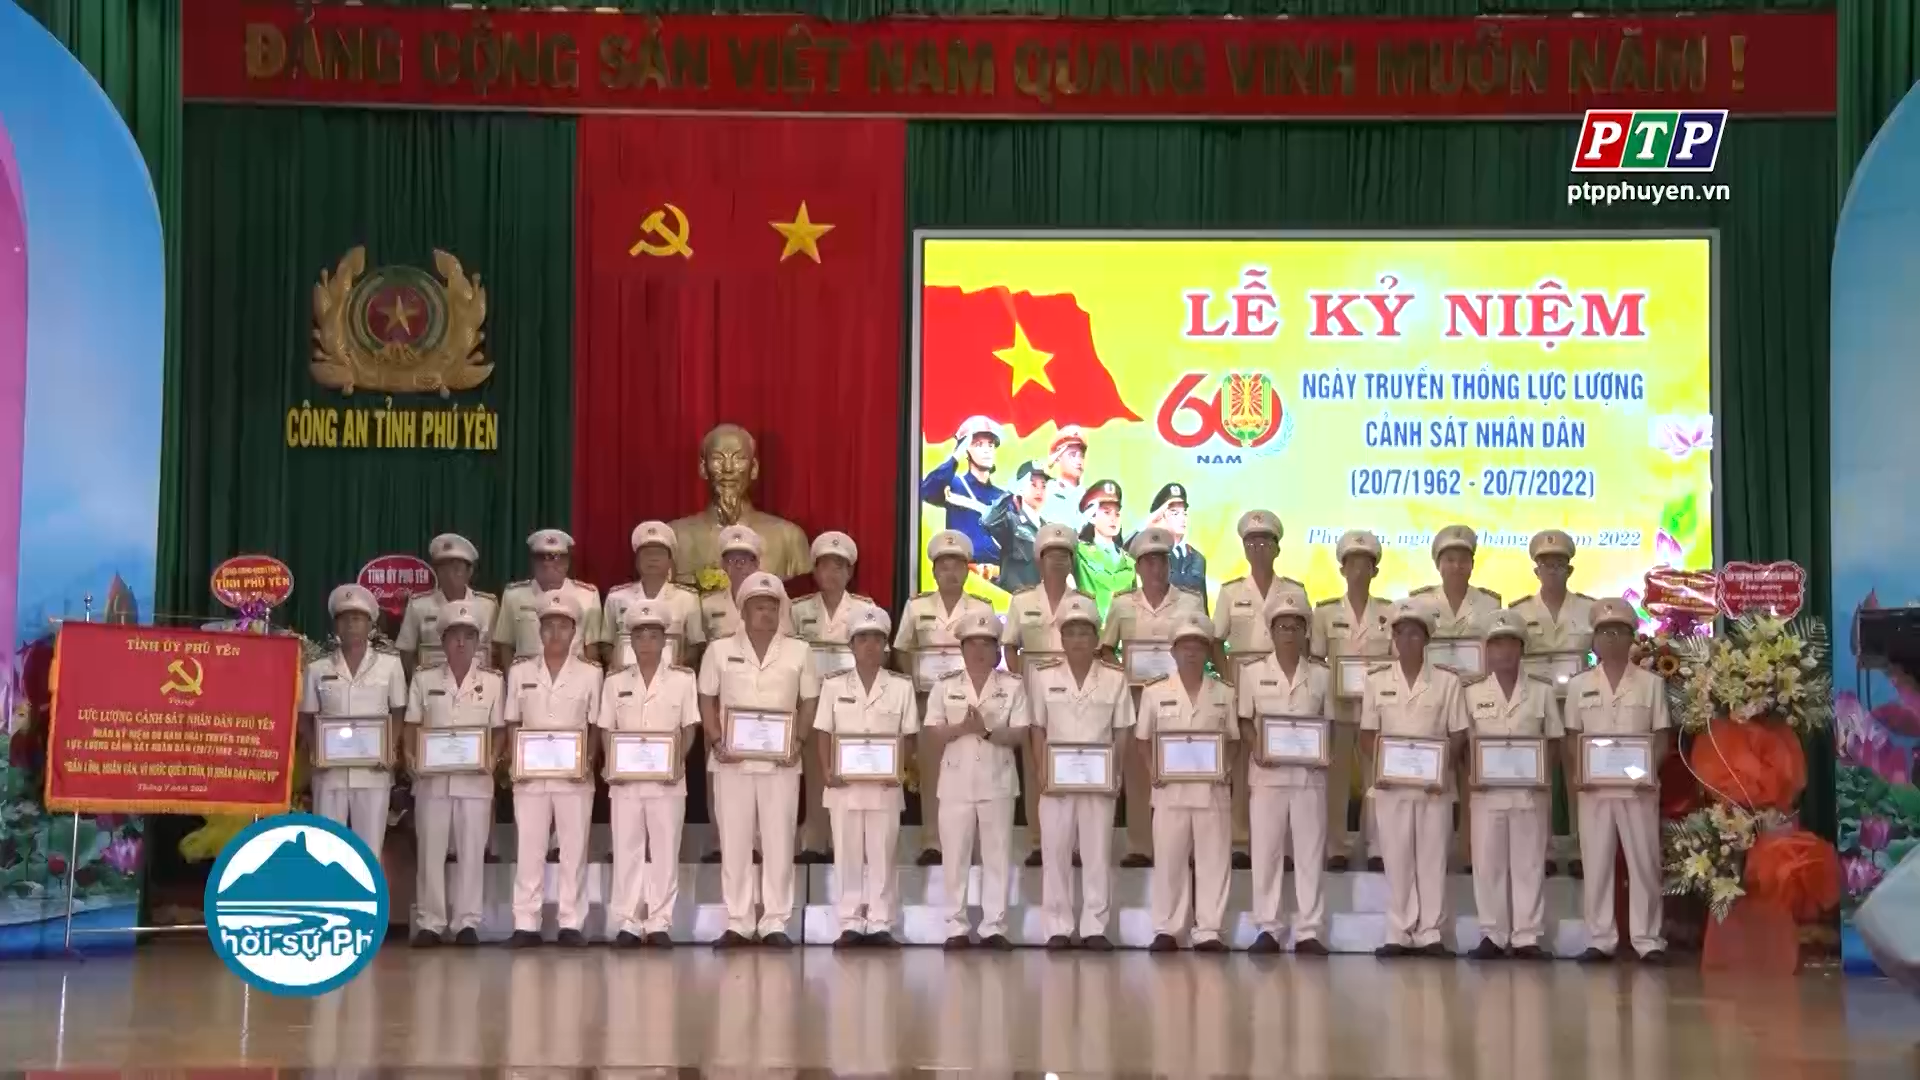 Kỷ niệm 60 năm ngày truyền thống lực lượng cảnh sát nhân dân Việt Nam